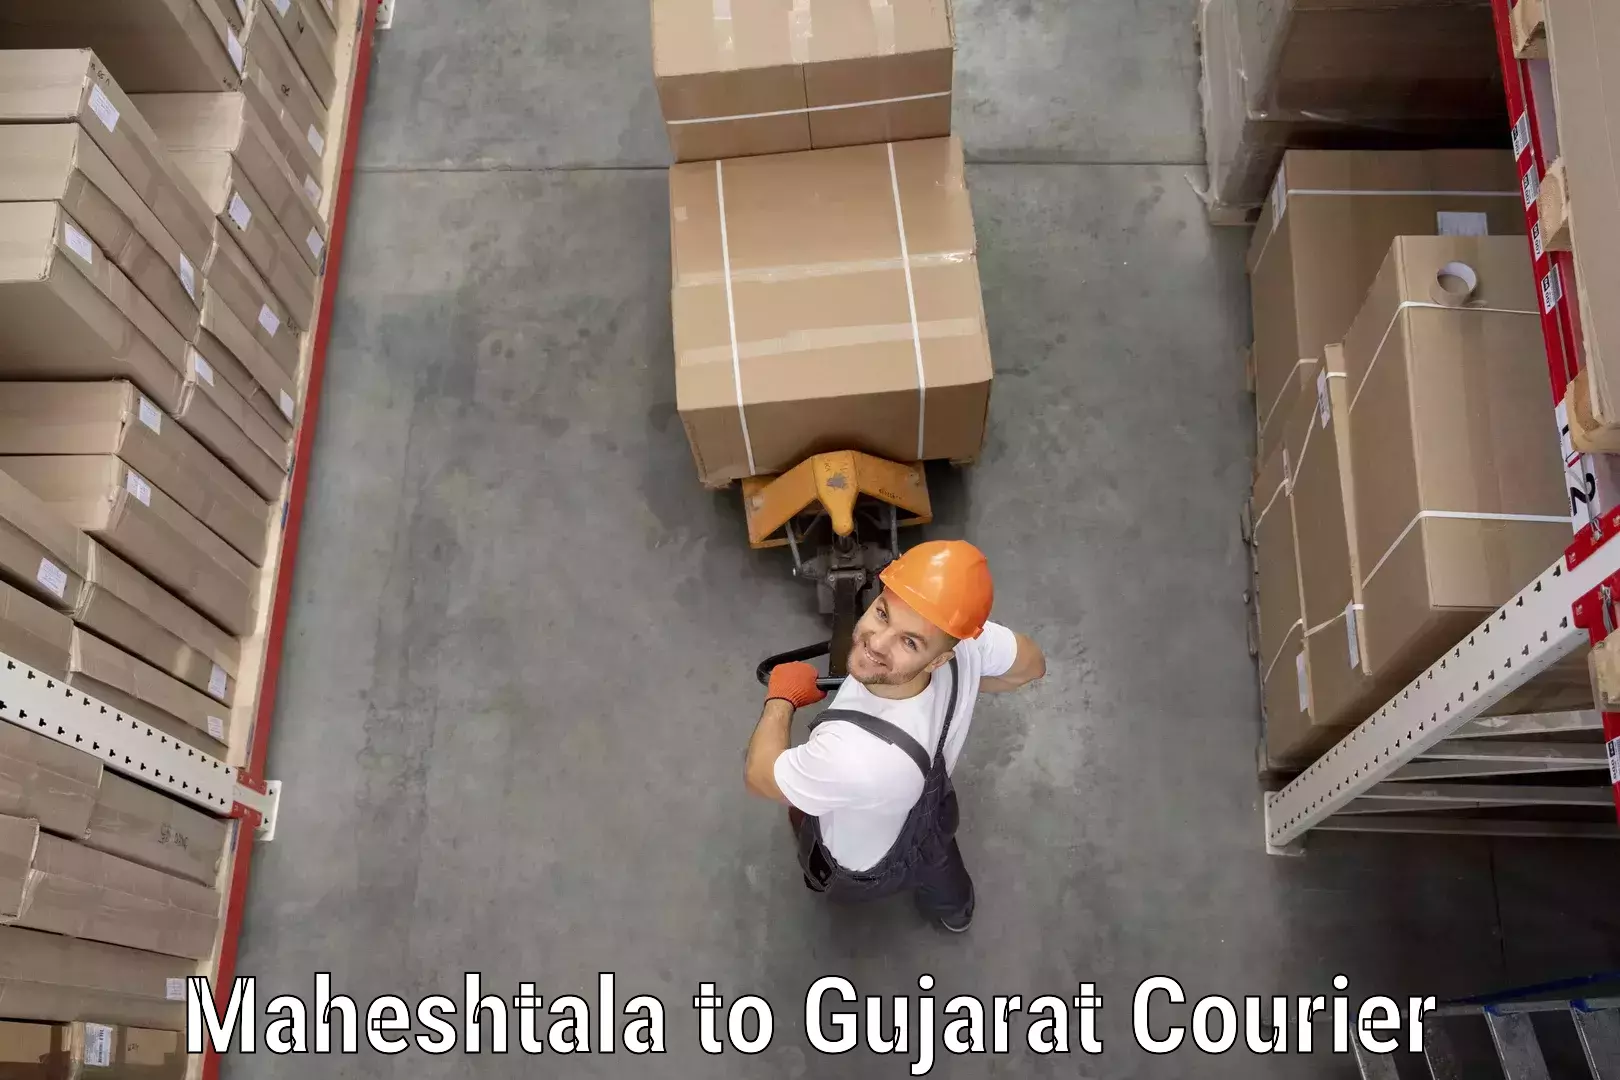 Full-service courier options Maheshtala to Dahej